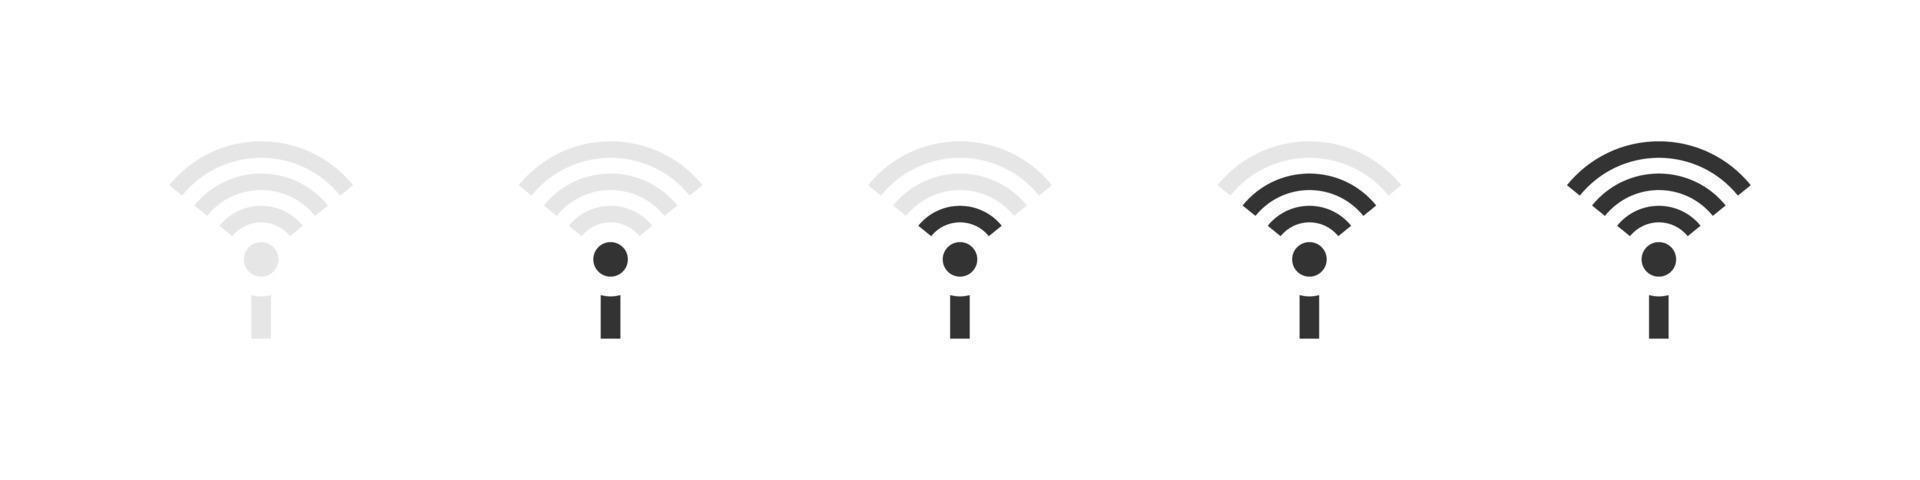 conjunto de señales wifi de antena. concepto de iconos wifi. señal de internet inalámbrica de estilo plano. iconos simples. ilustración vectorial vector